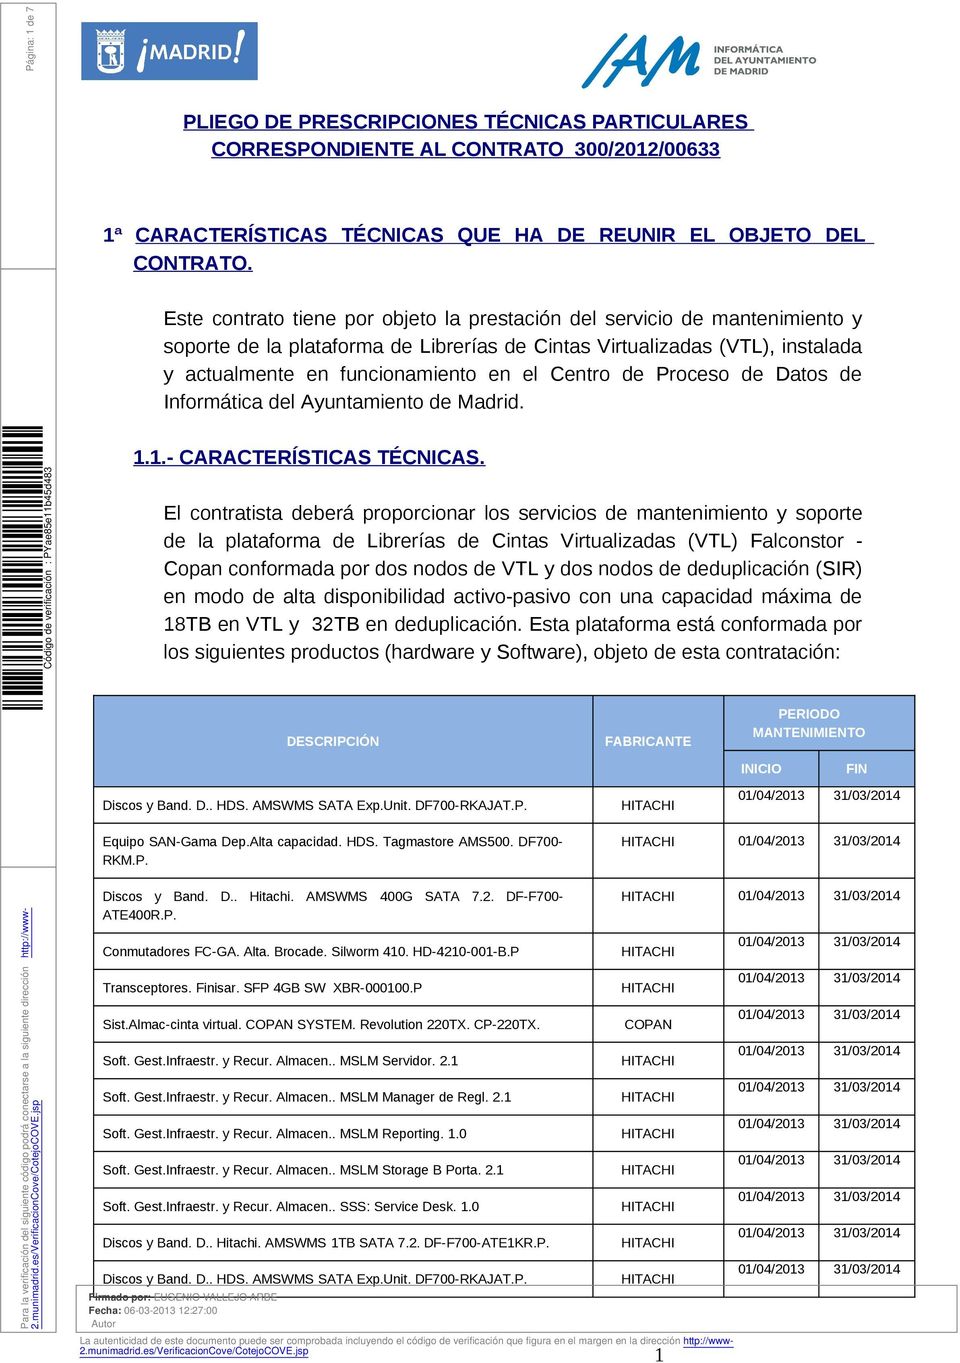 Dats de Infrmática del Ayuntamient de Madrid. 1.1.- CARACTERÍSTICAS TÉCNICAS.